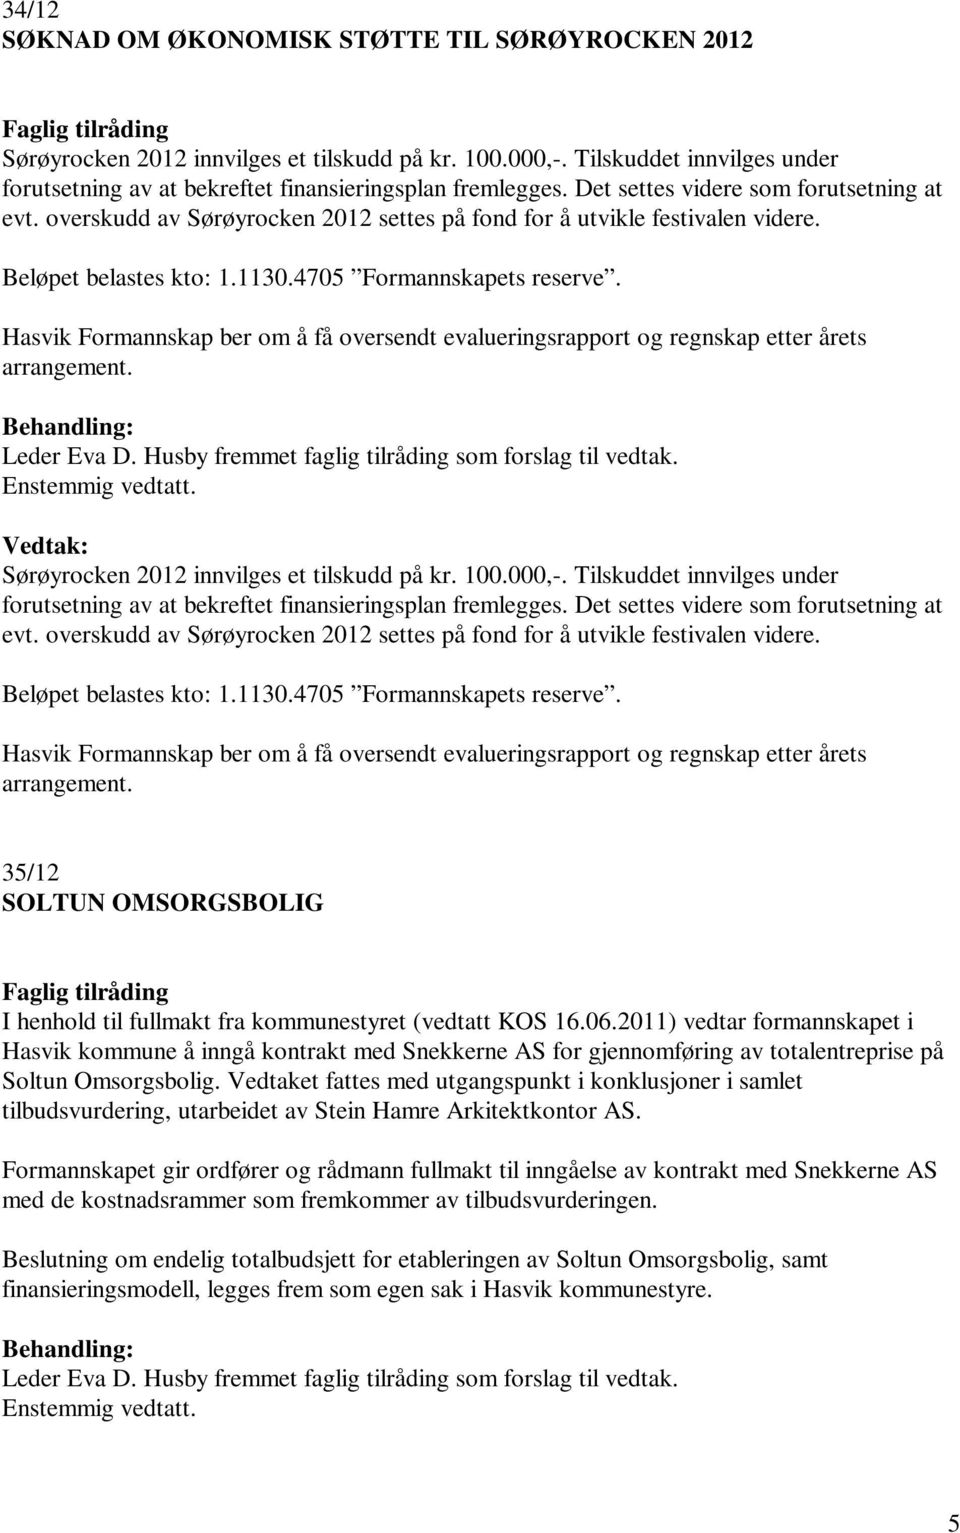 Hasvik Formannskap ber om å få oversendt evalueringsrapport og regnskap etter årets arrangement. Sørøyrocken 2012 innvilges et tilskudd på kr. 100.000,-.